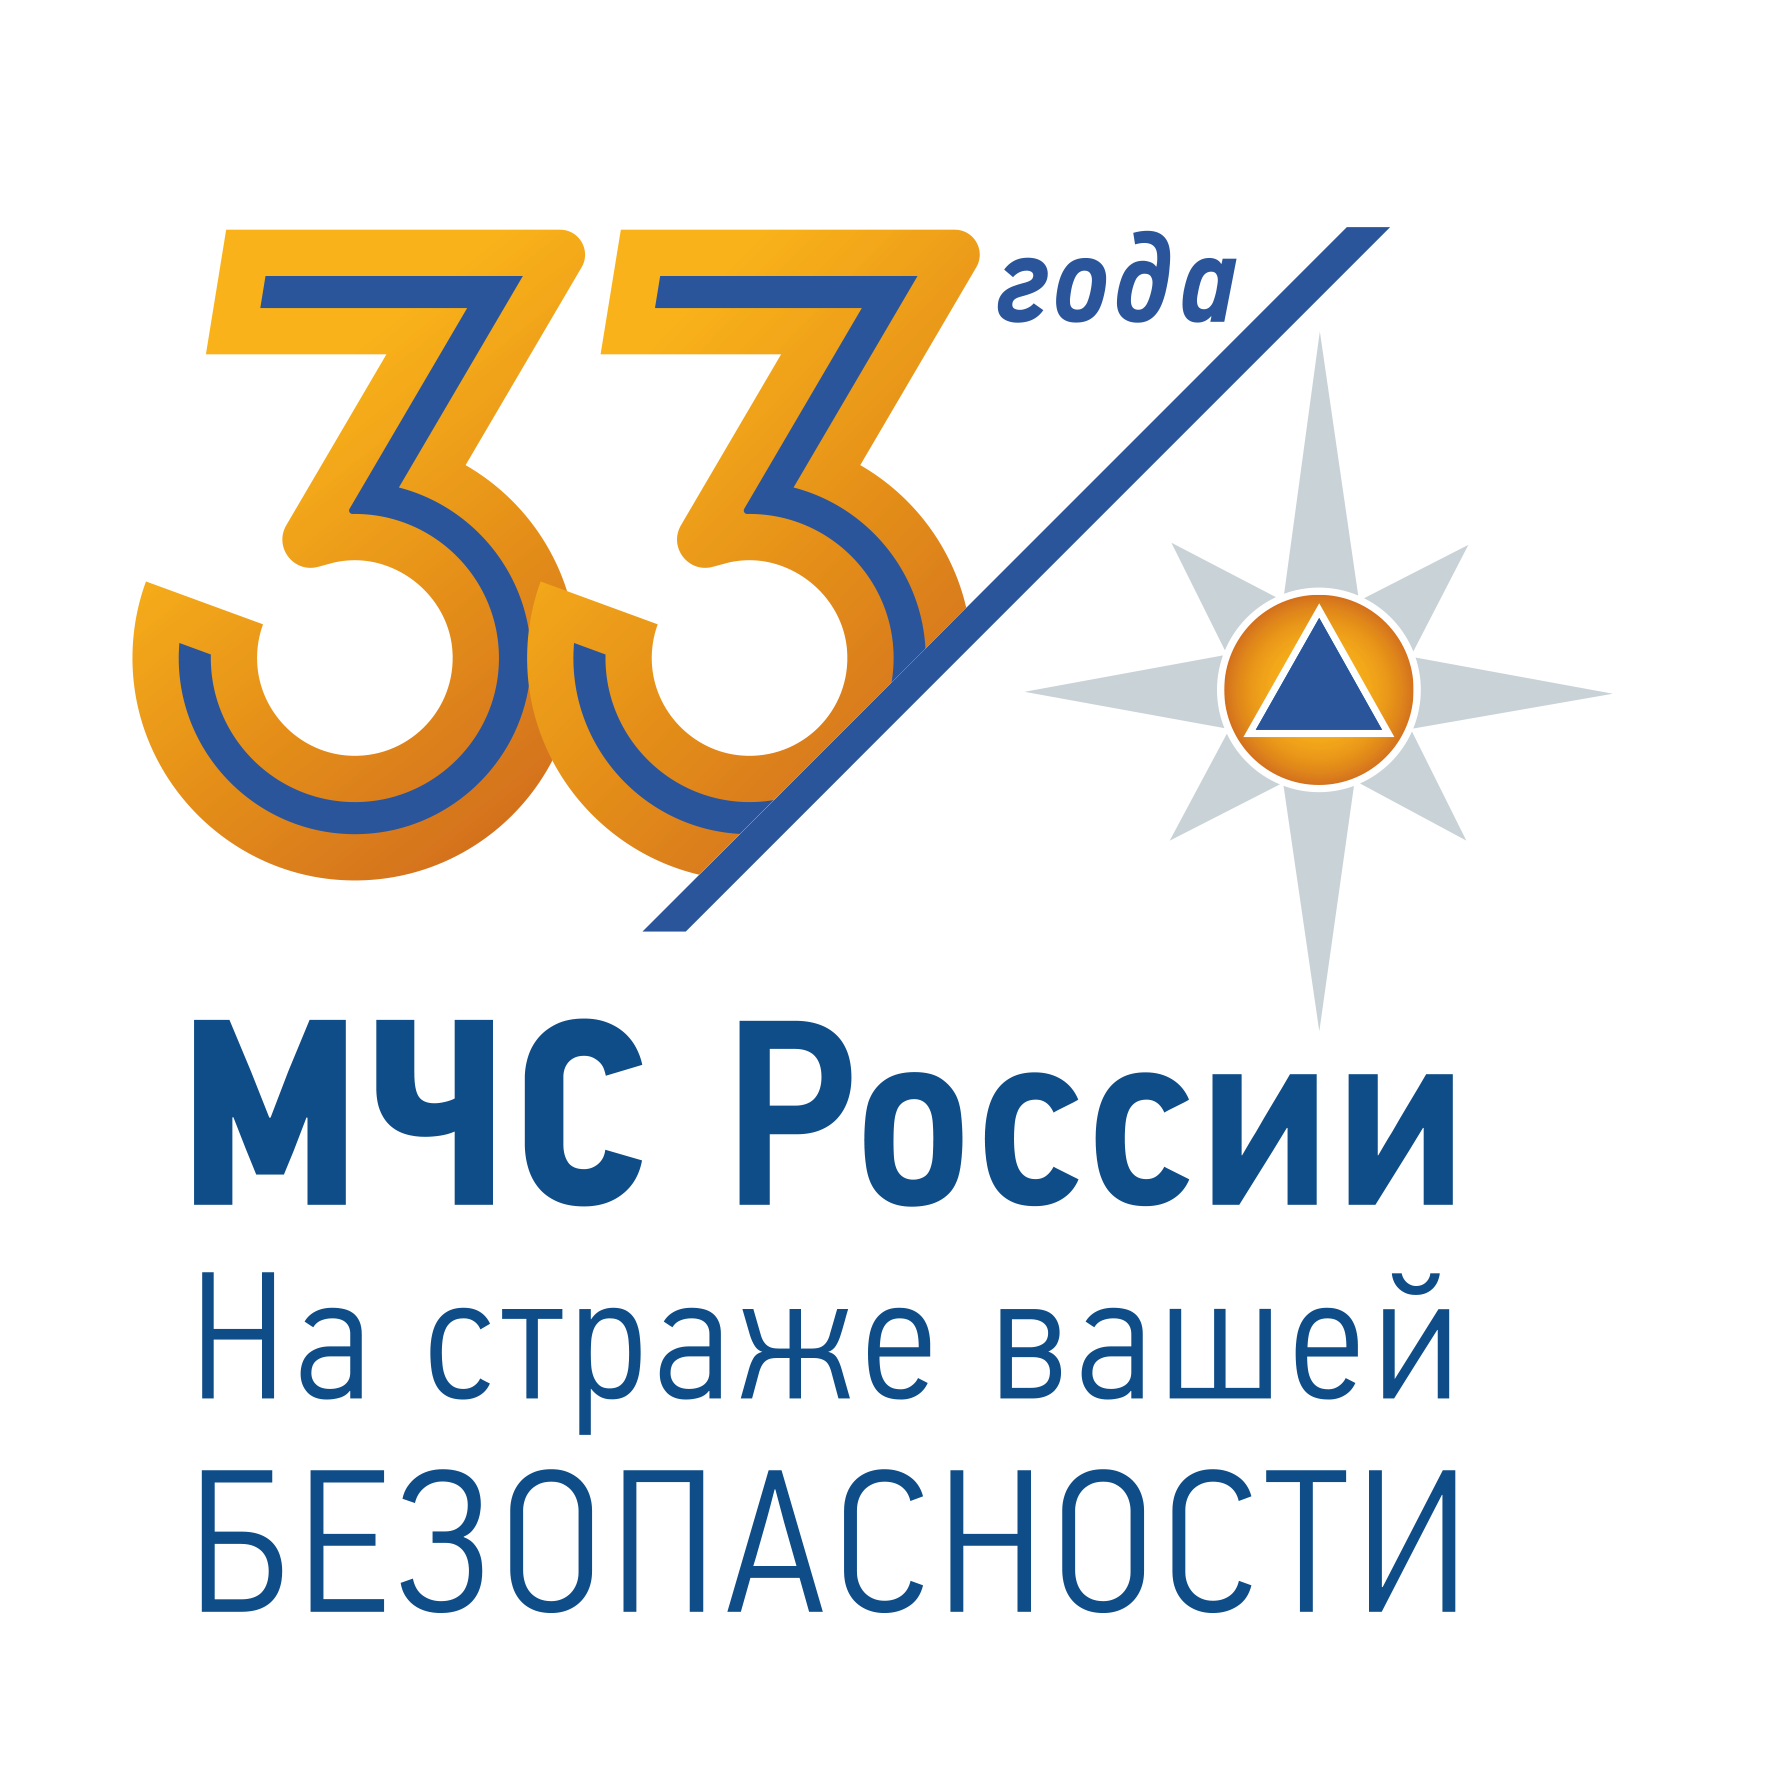 33 года МЧС России.